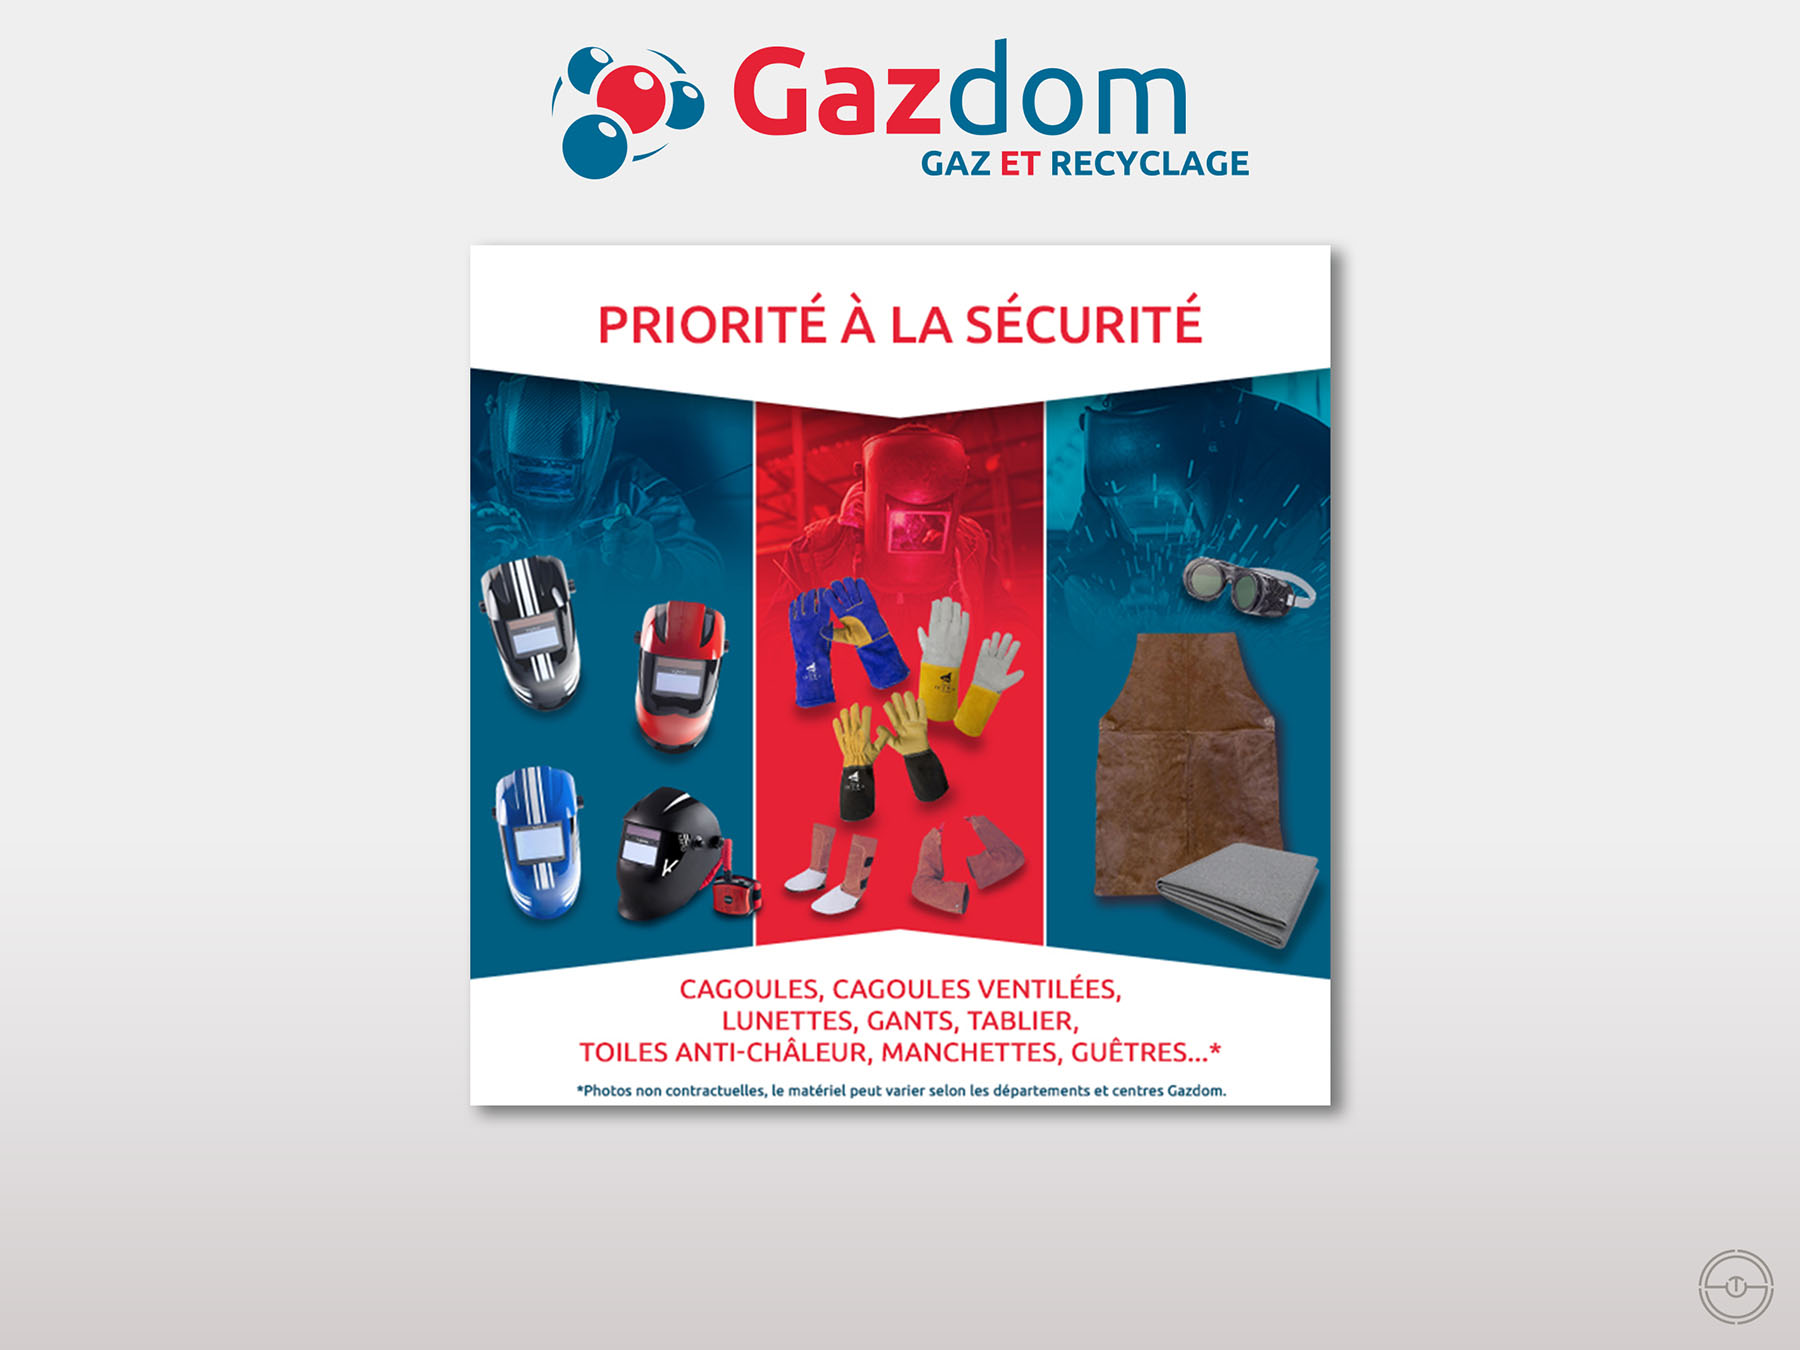 Publicité digitale de GAZ DOM dans les Antilles pour promouvoir le port des EPI